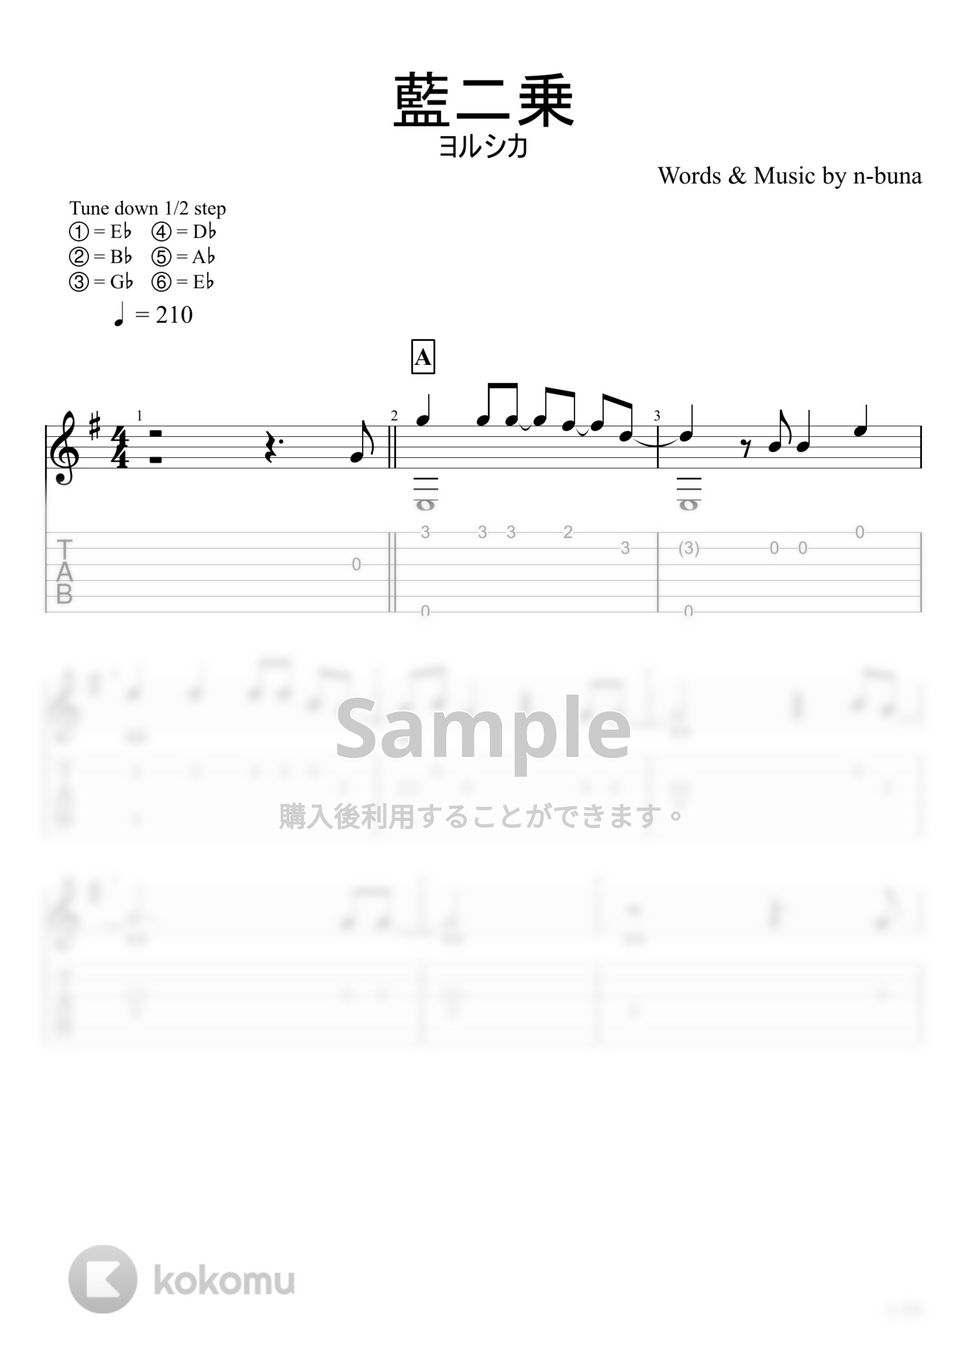 ヨルシカ - 藍二乗 (ソロギター) by u3danchou